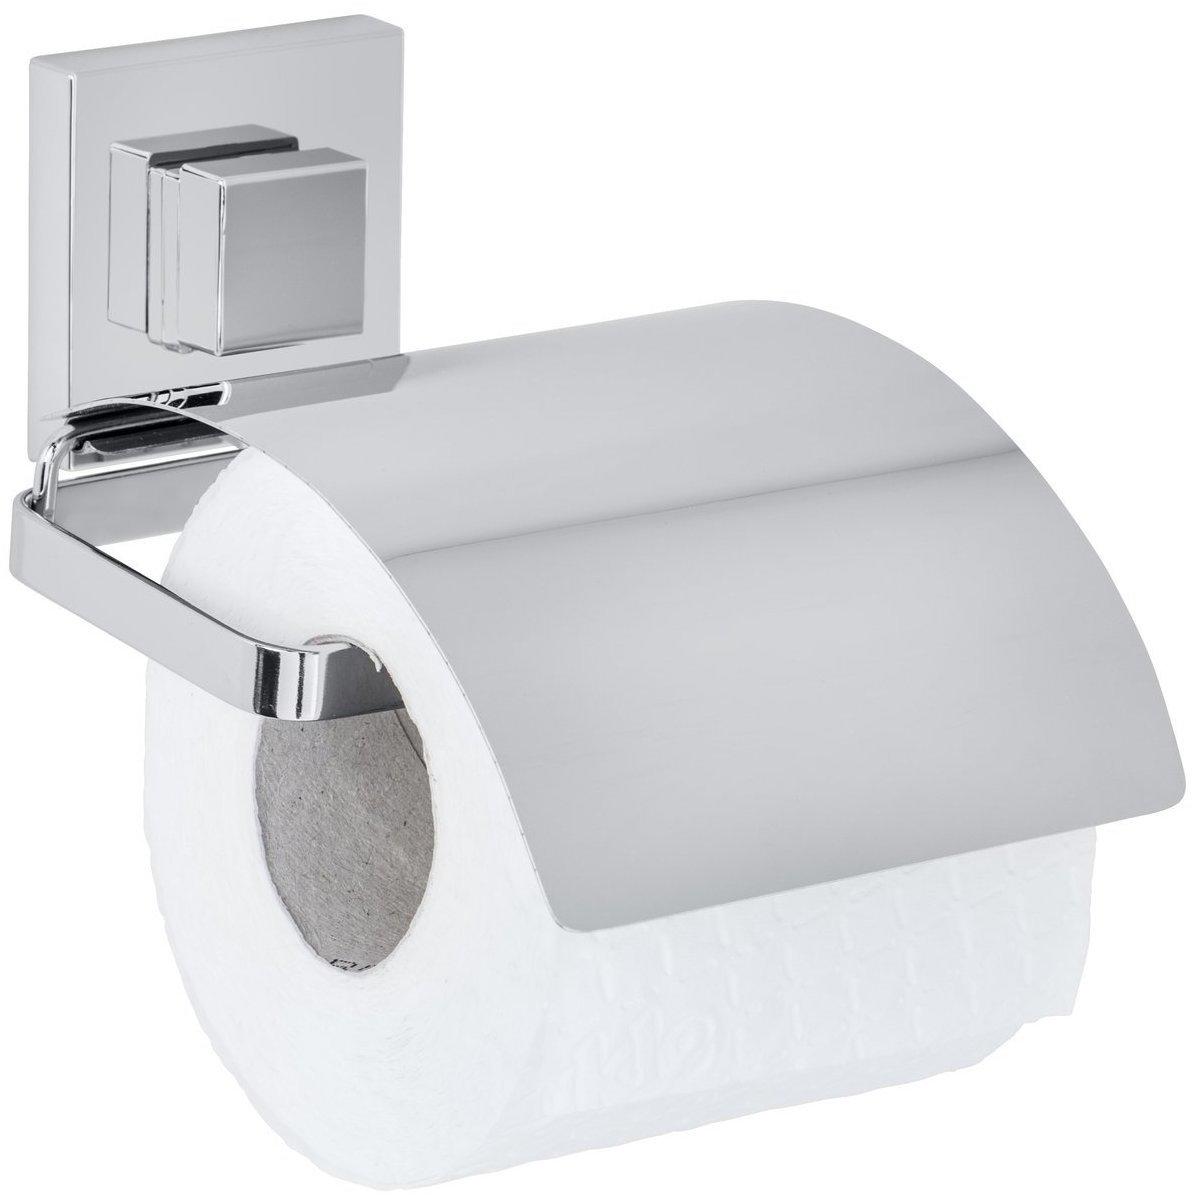 Toilettenpapierhalter mit Ablage Edelstahl WC Klo Papierhalterung Rolle Silber 